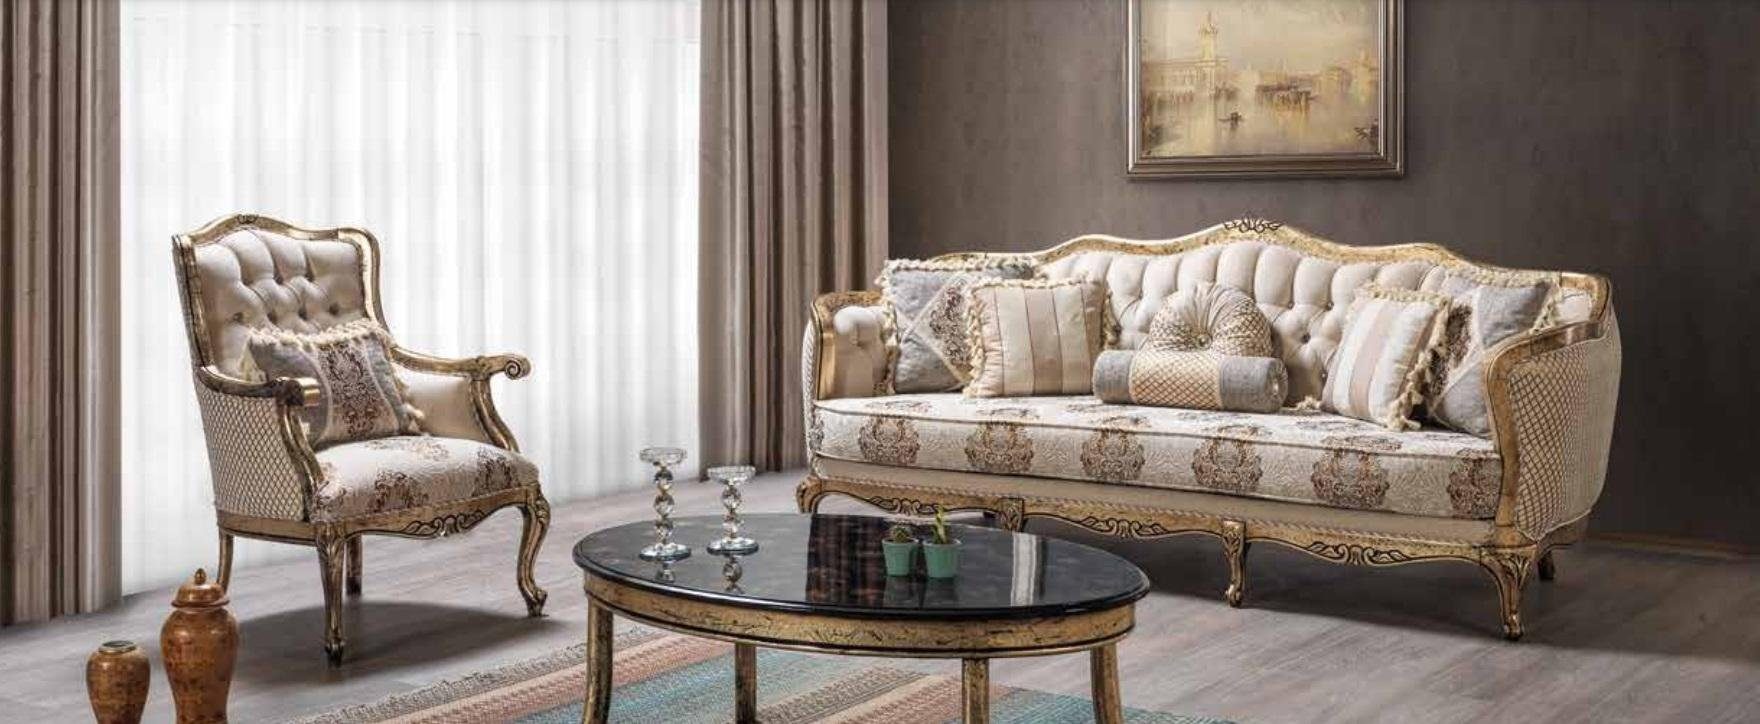 JVmoebel Wohnzimmer-Set Luxus Sofagarnitur Sofas Sitzer 3+1+1 Neu Sitzer Stoff Couchtisch